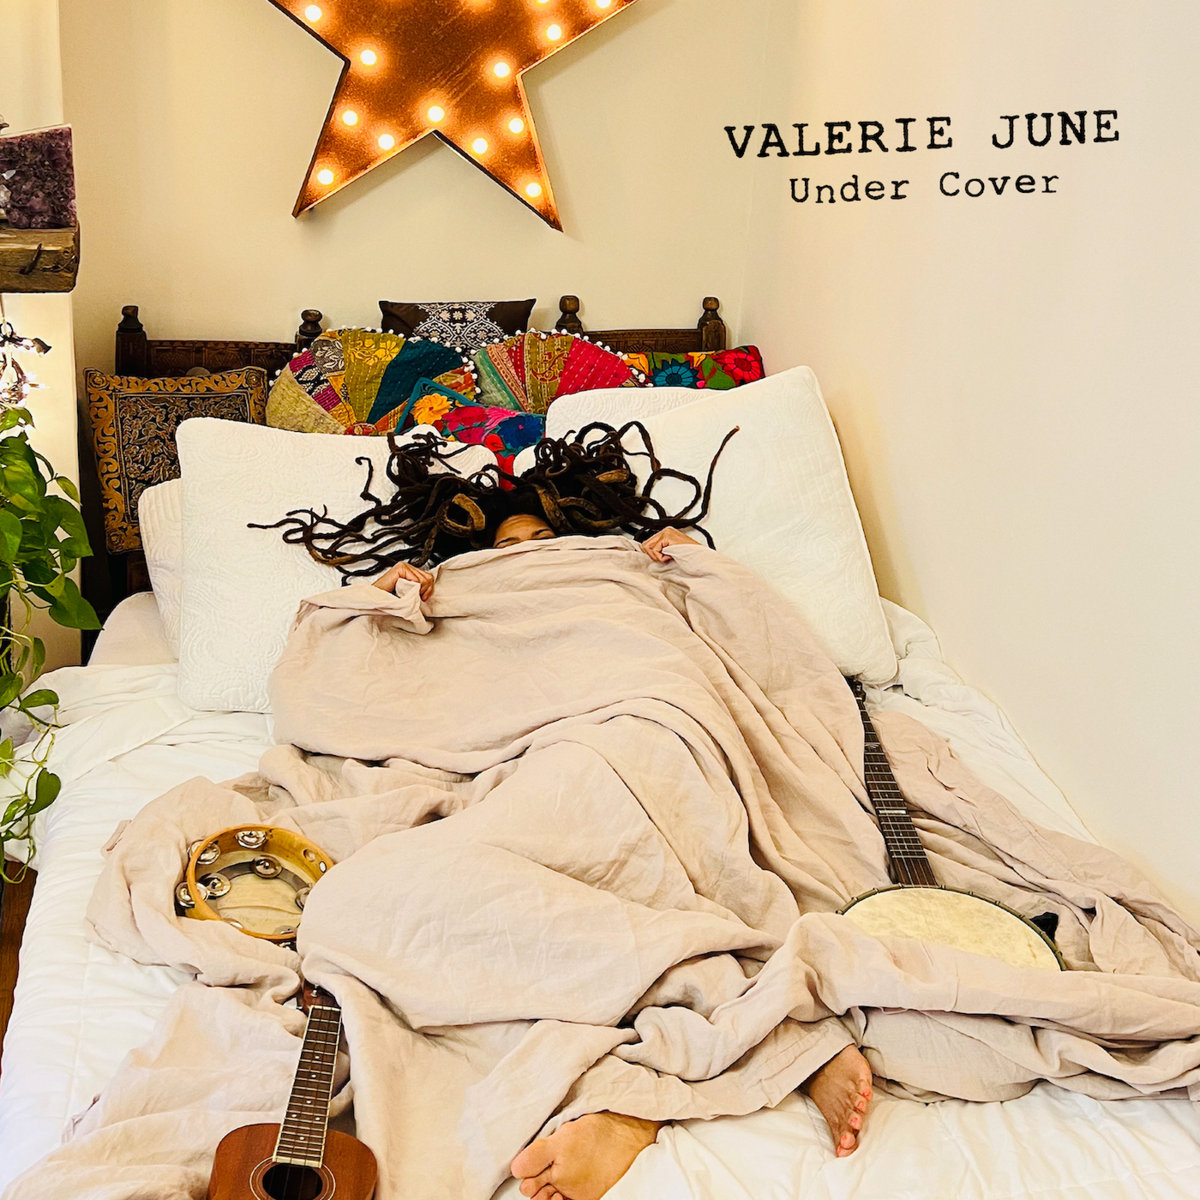 Valerie June Under Cover